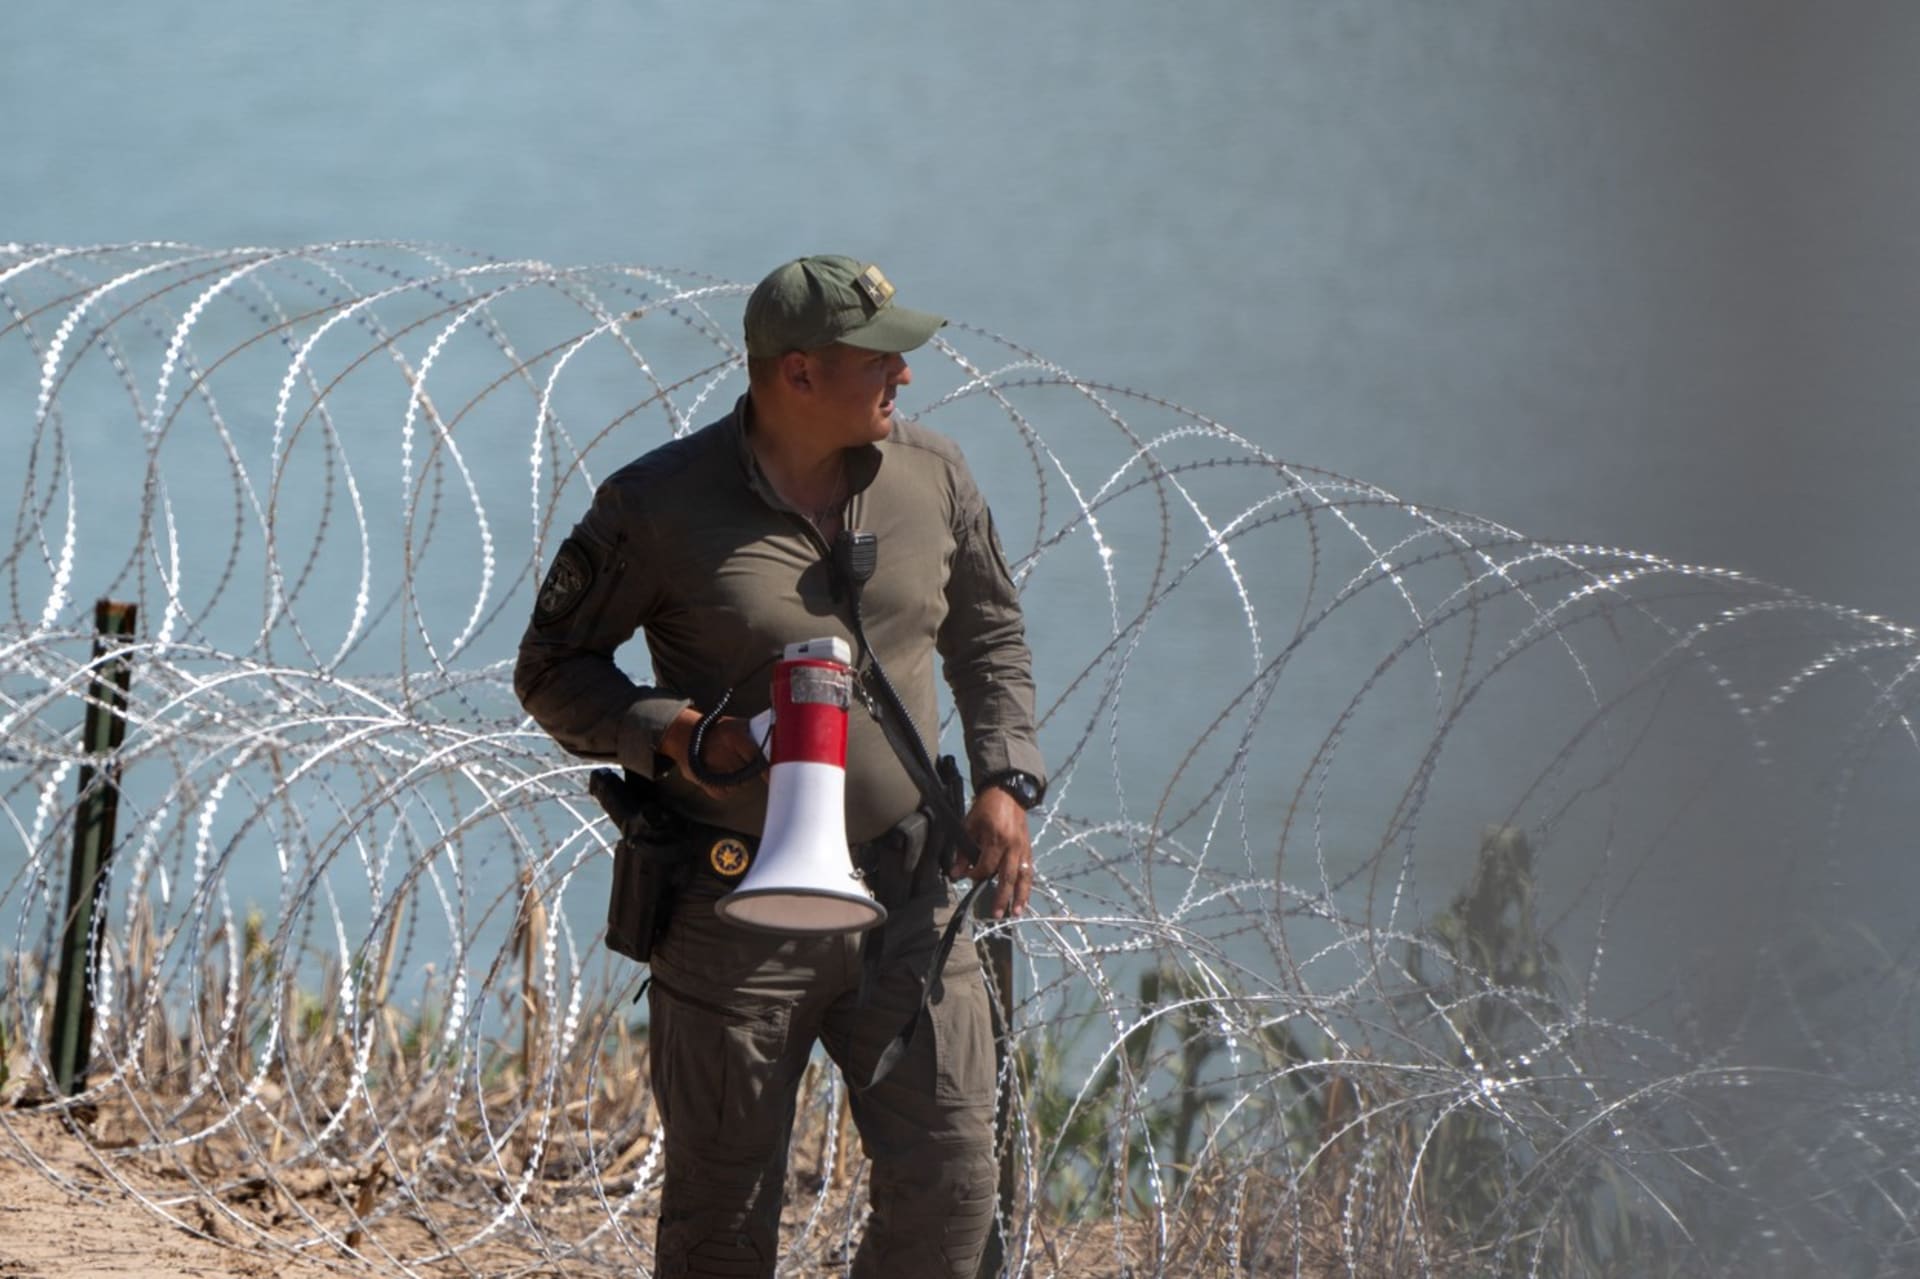 Američtí pohraničníci musí dodržovat velmi přísné a kontroverzní postupy v boji proti nelegální migraci.